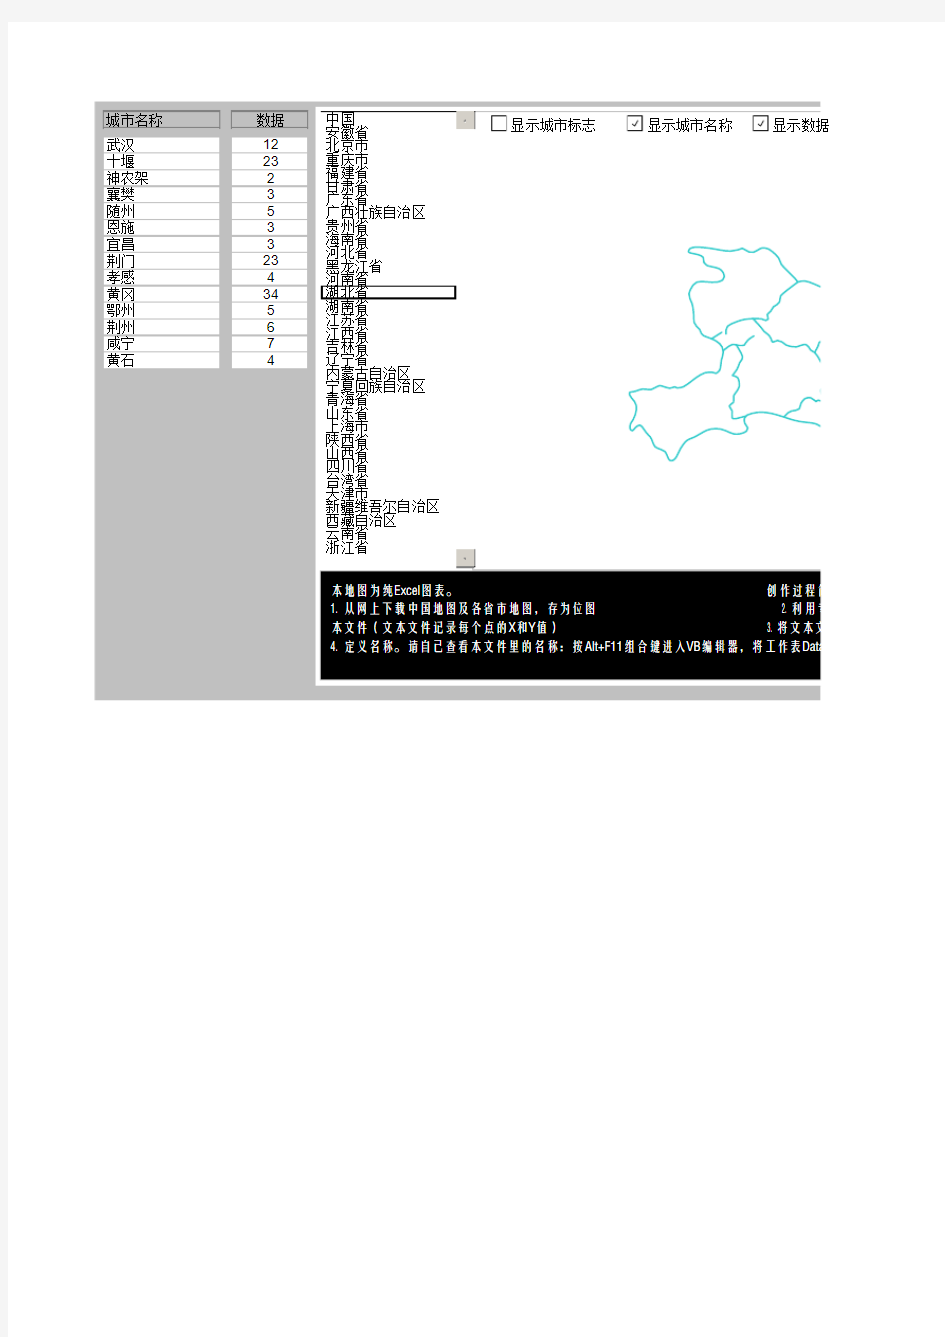 中国各省市矢量地图-Excel版最新